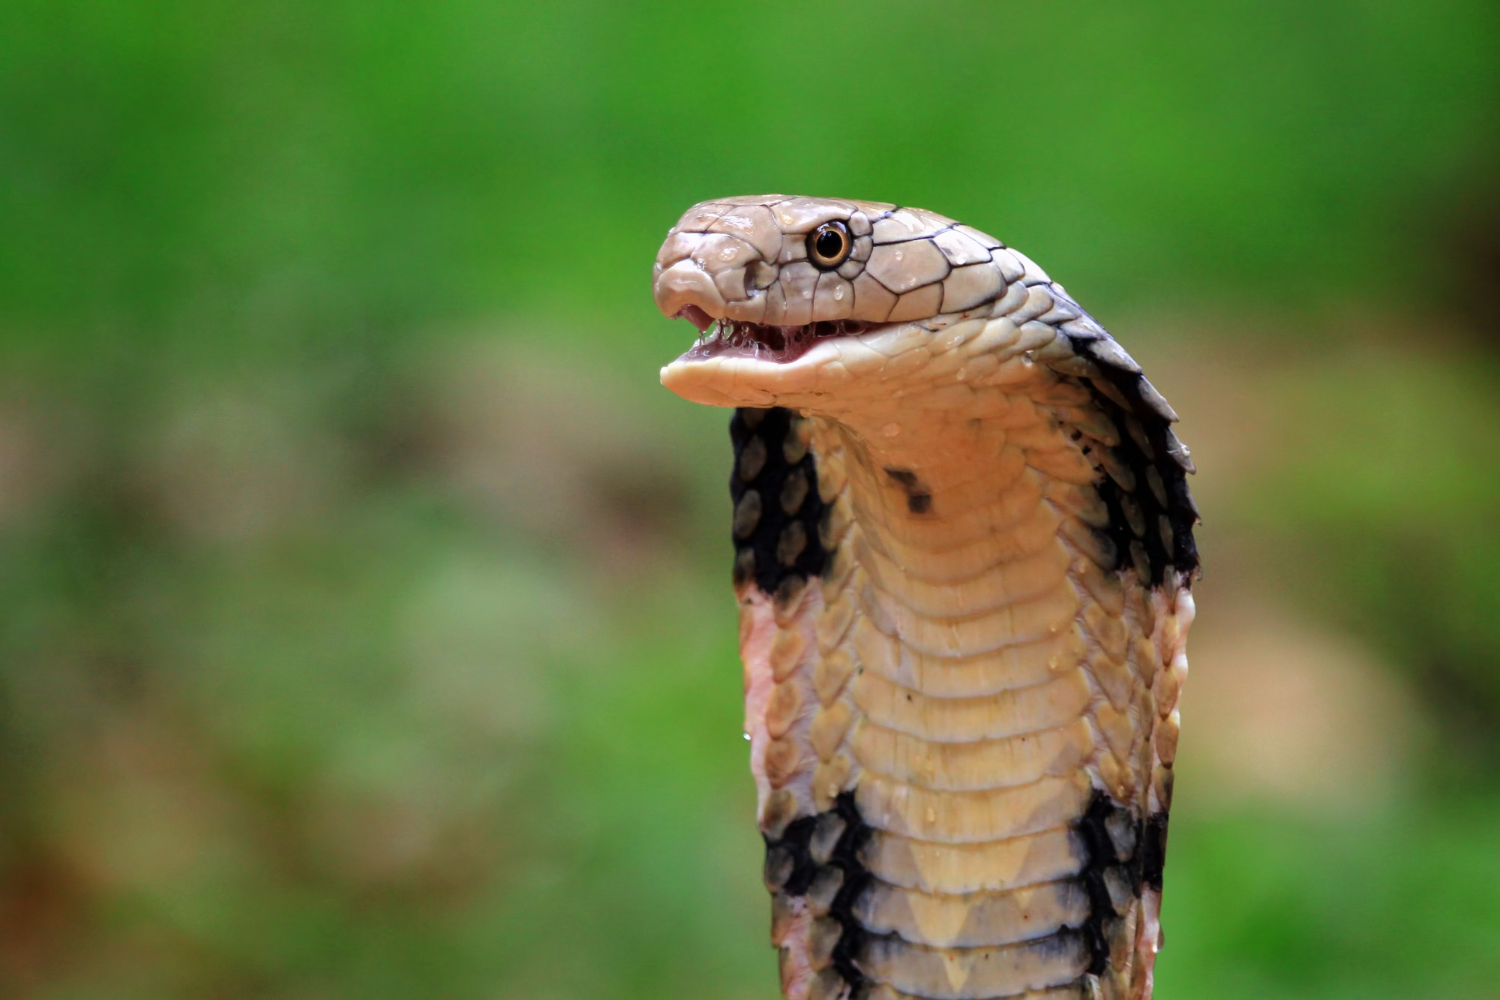 psicologiasdobrasil.com.br - Cobra venenosa morre depois de ser mordida por menino de 8 anos